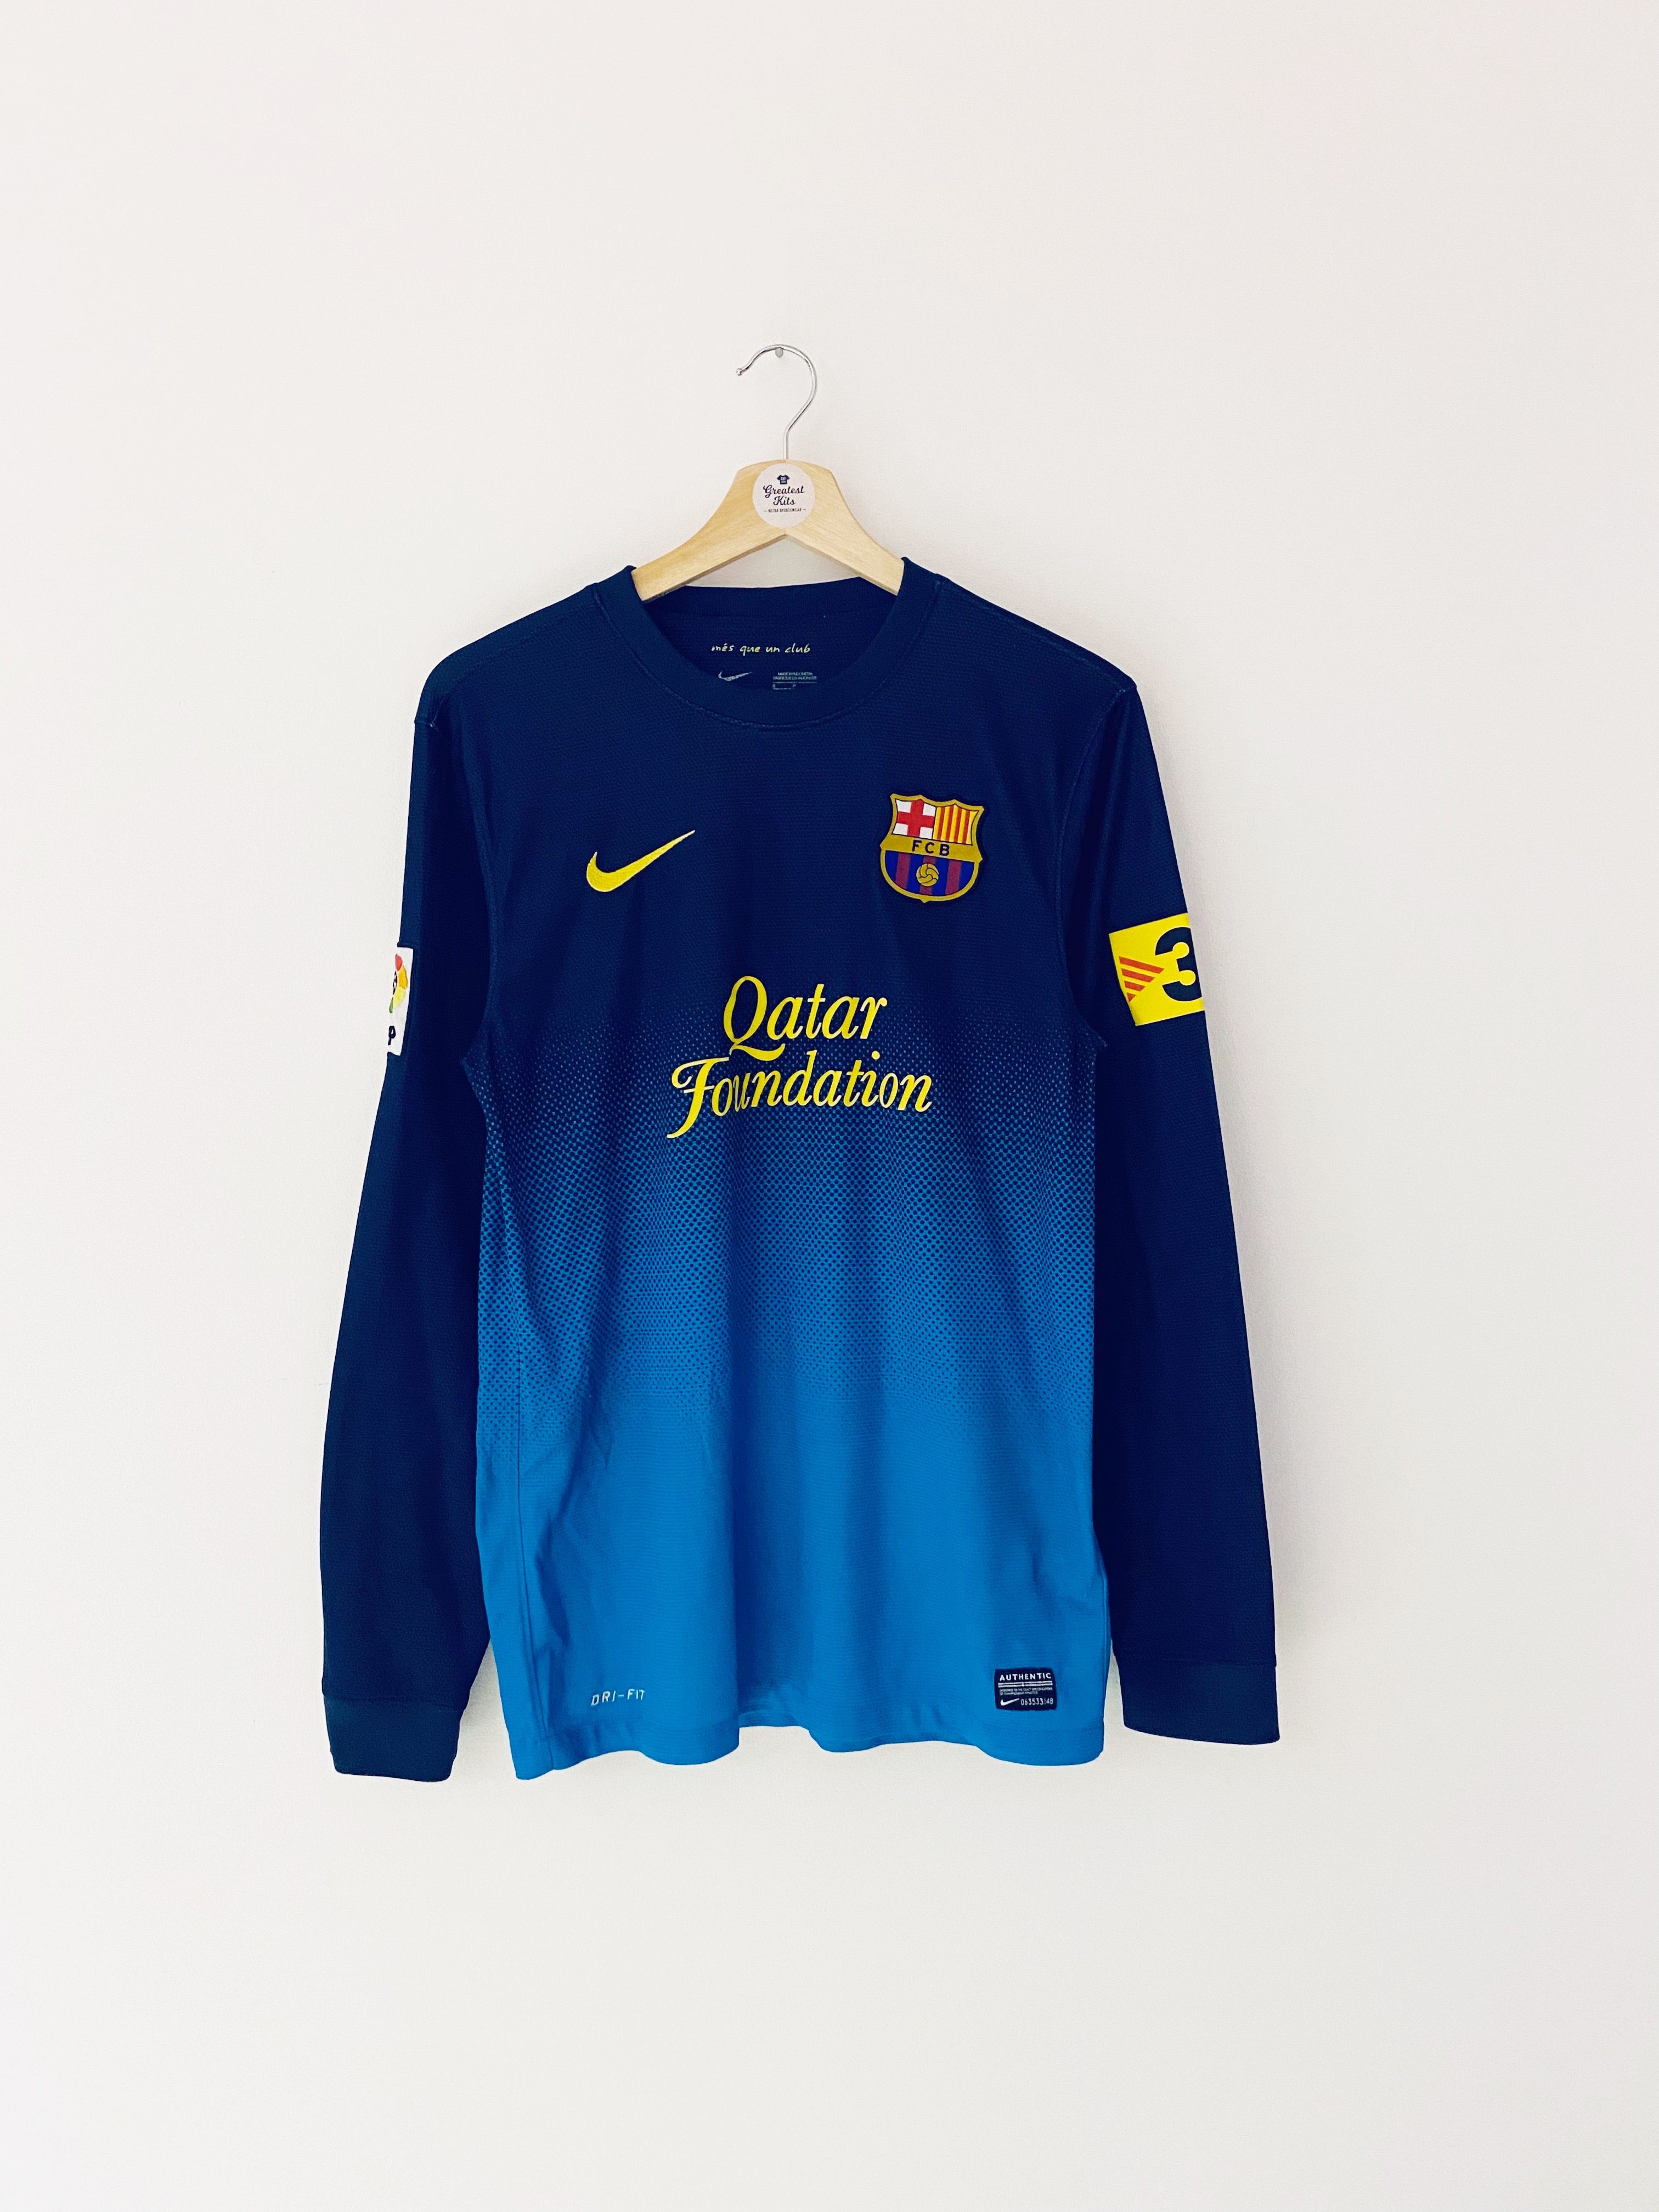 2012/13 Barcelona GK Shirt (S) 8/10